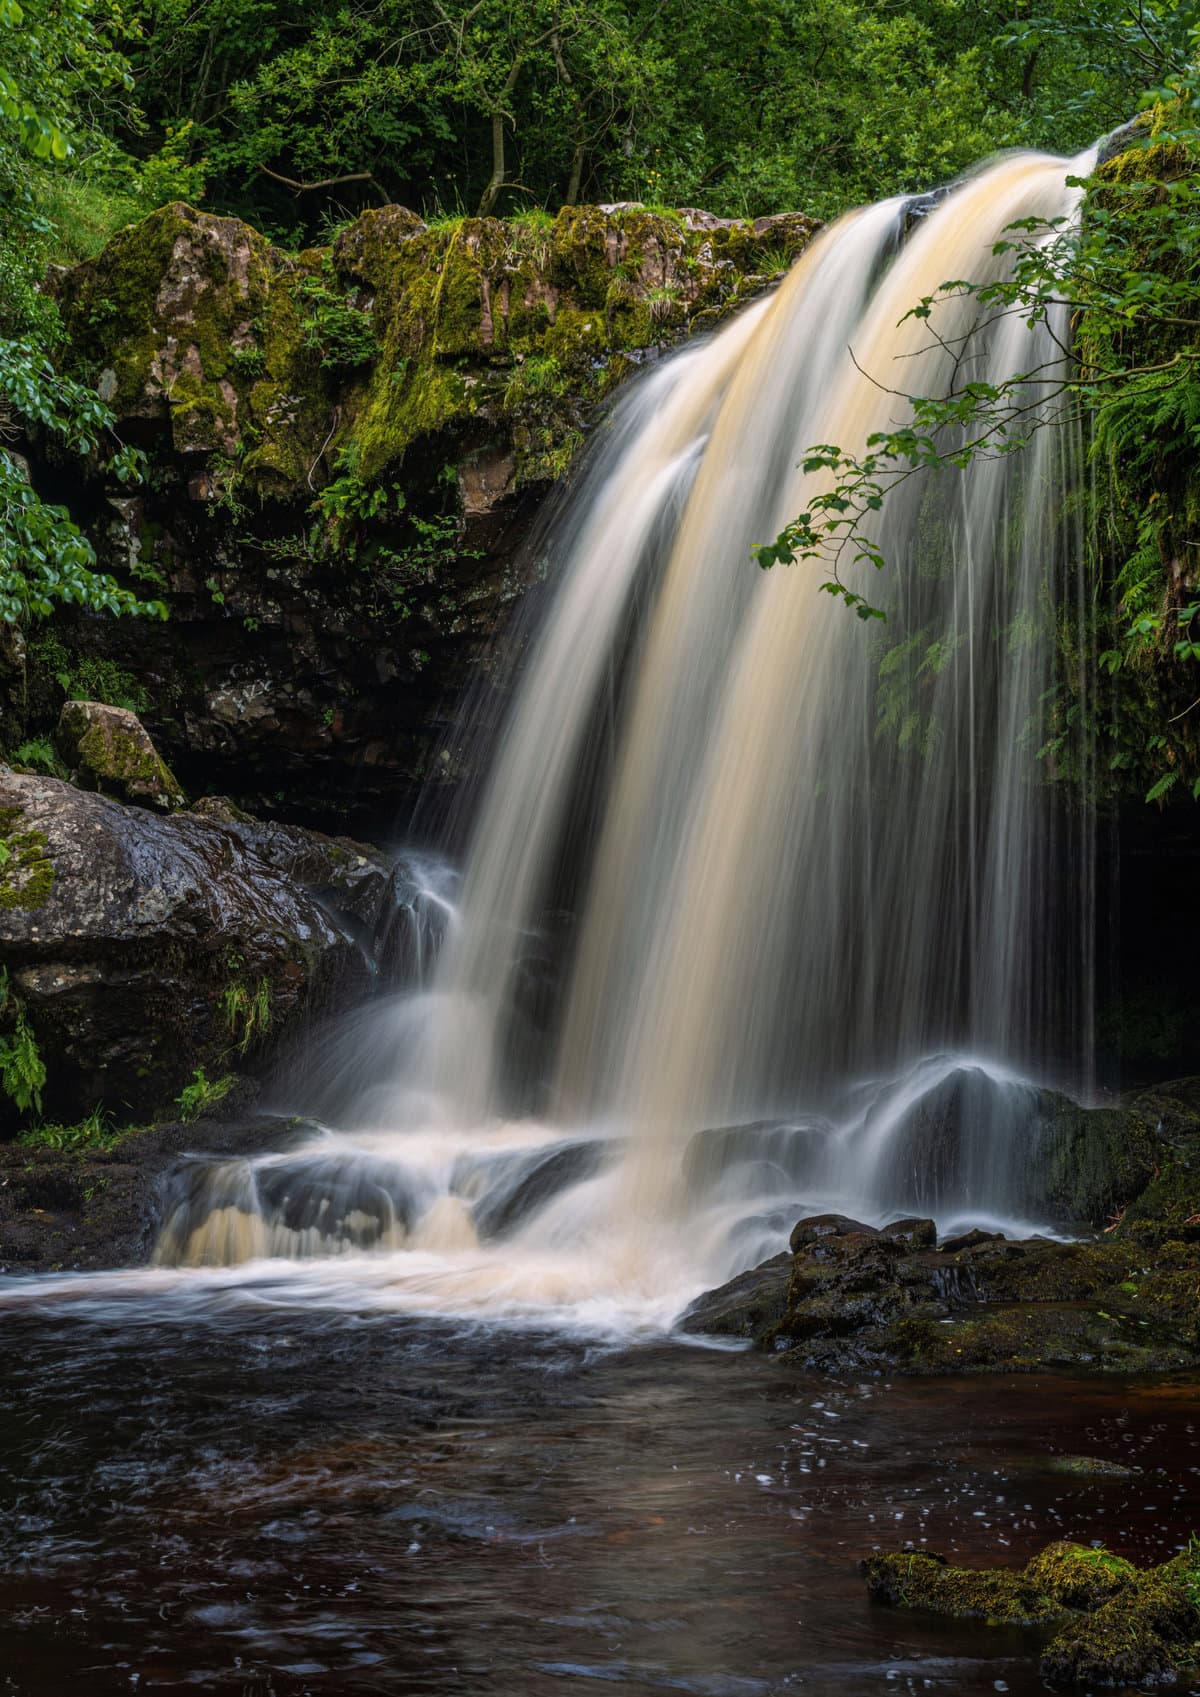 Campsie Glen Waterfalls in Glasgow, Scotland